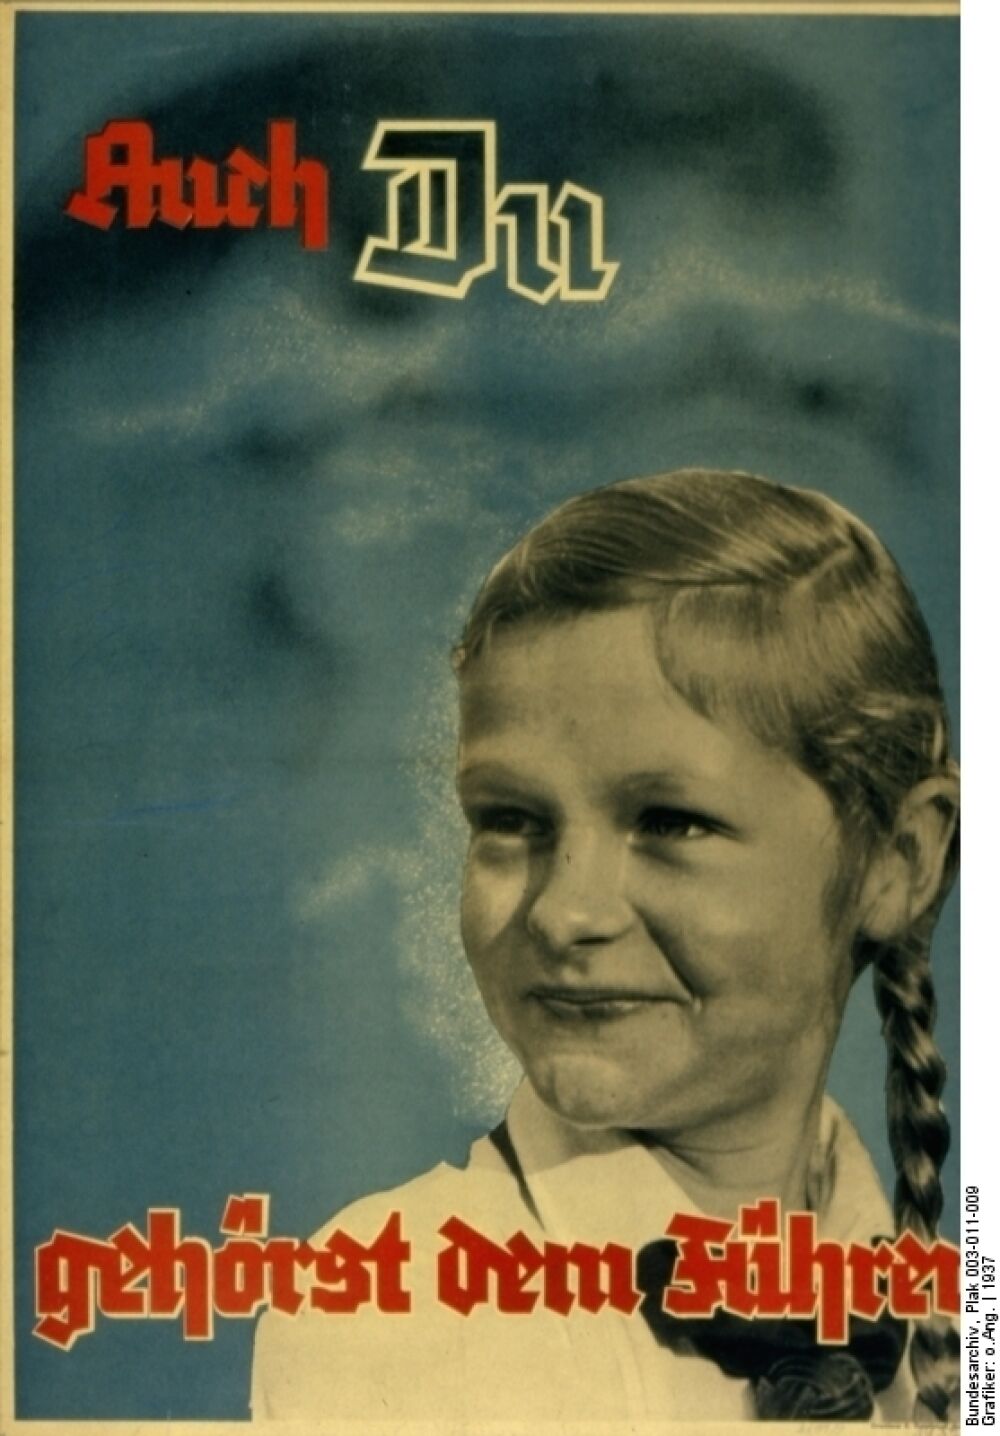 Propagandaplakat von 1937